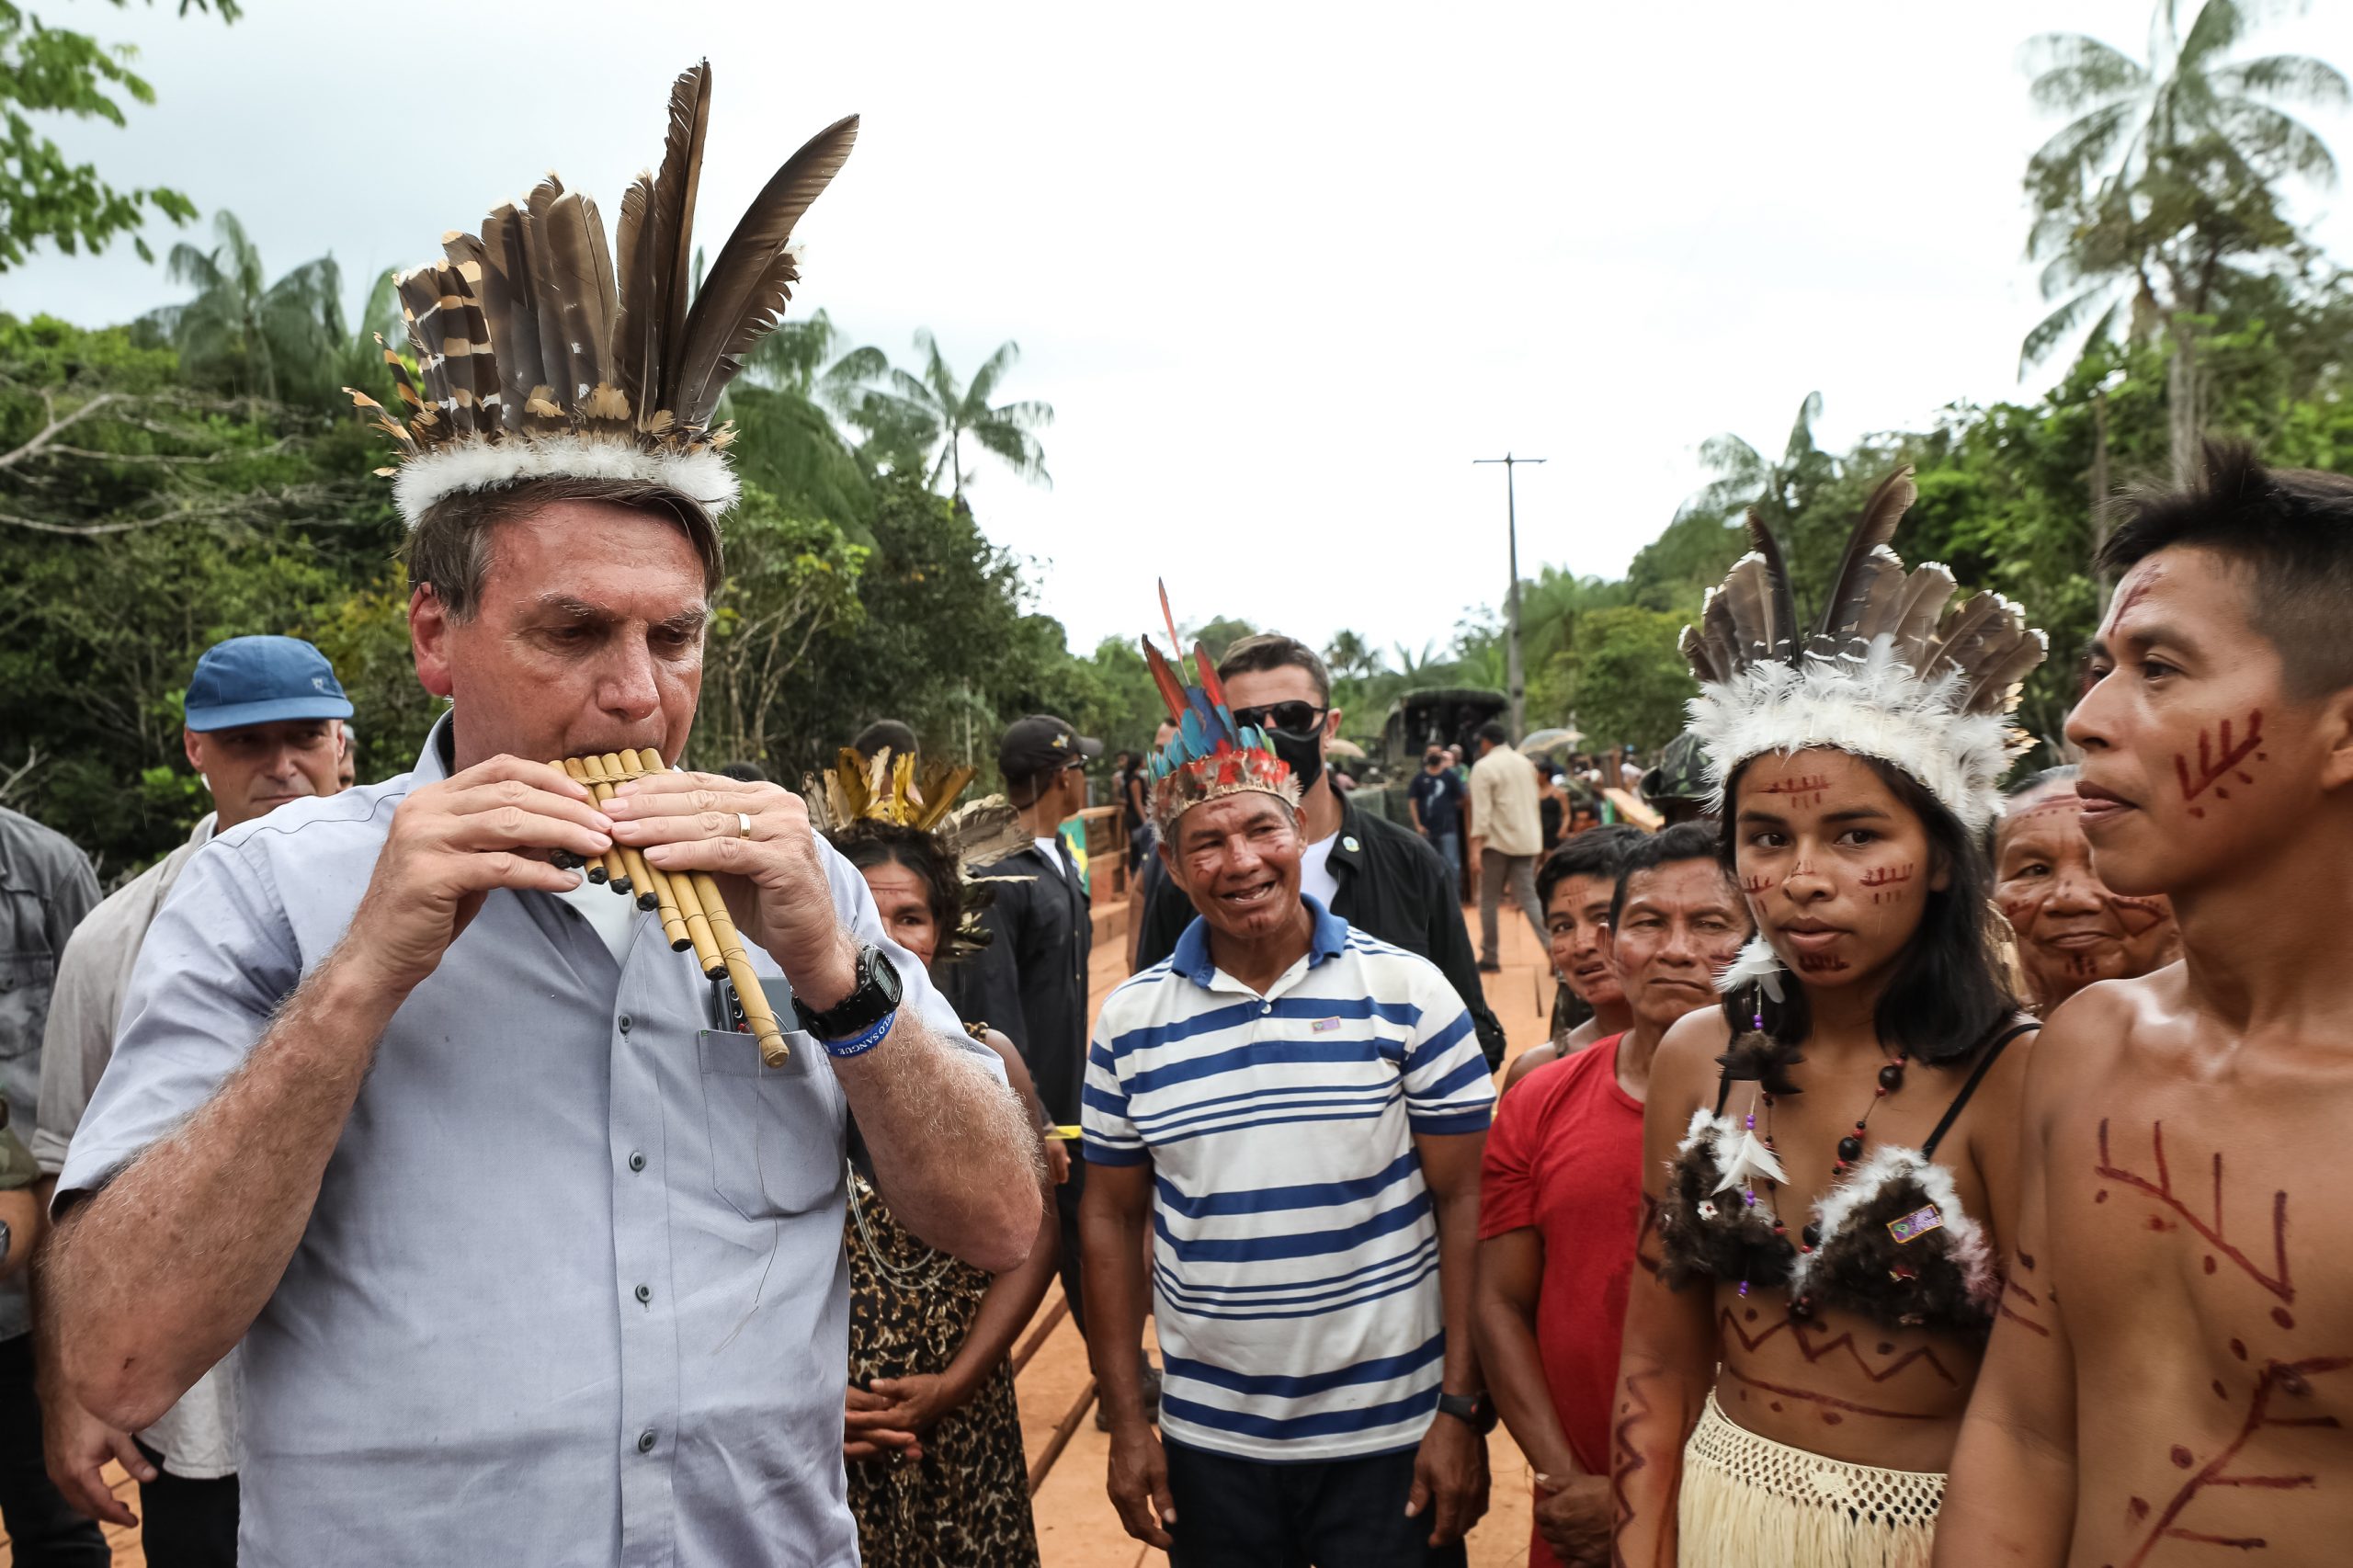 Sob clima de festa, indígenas recebem Bolsonaro com euforia e muitas fotos 20